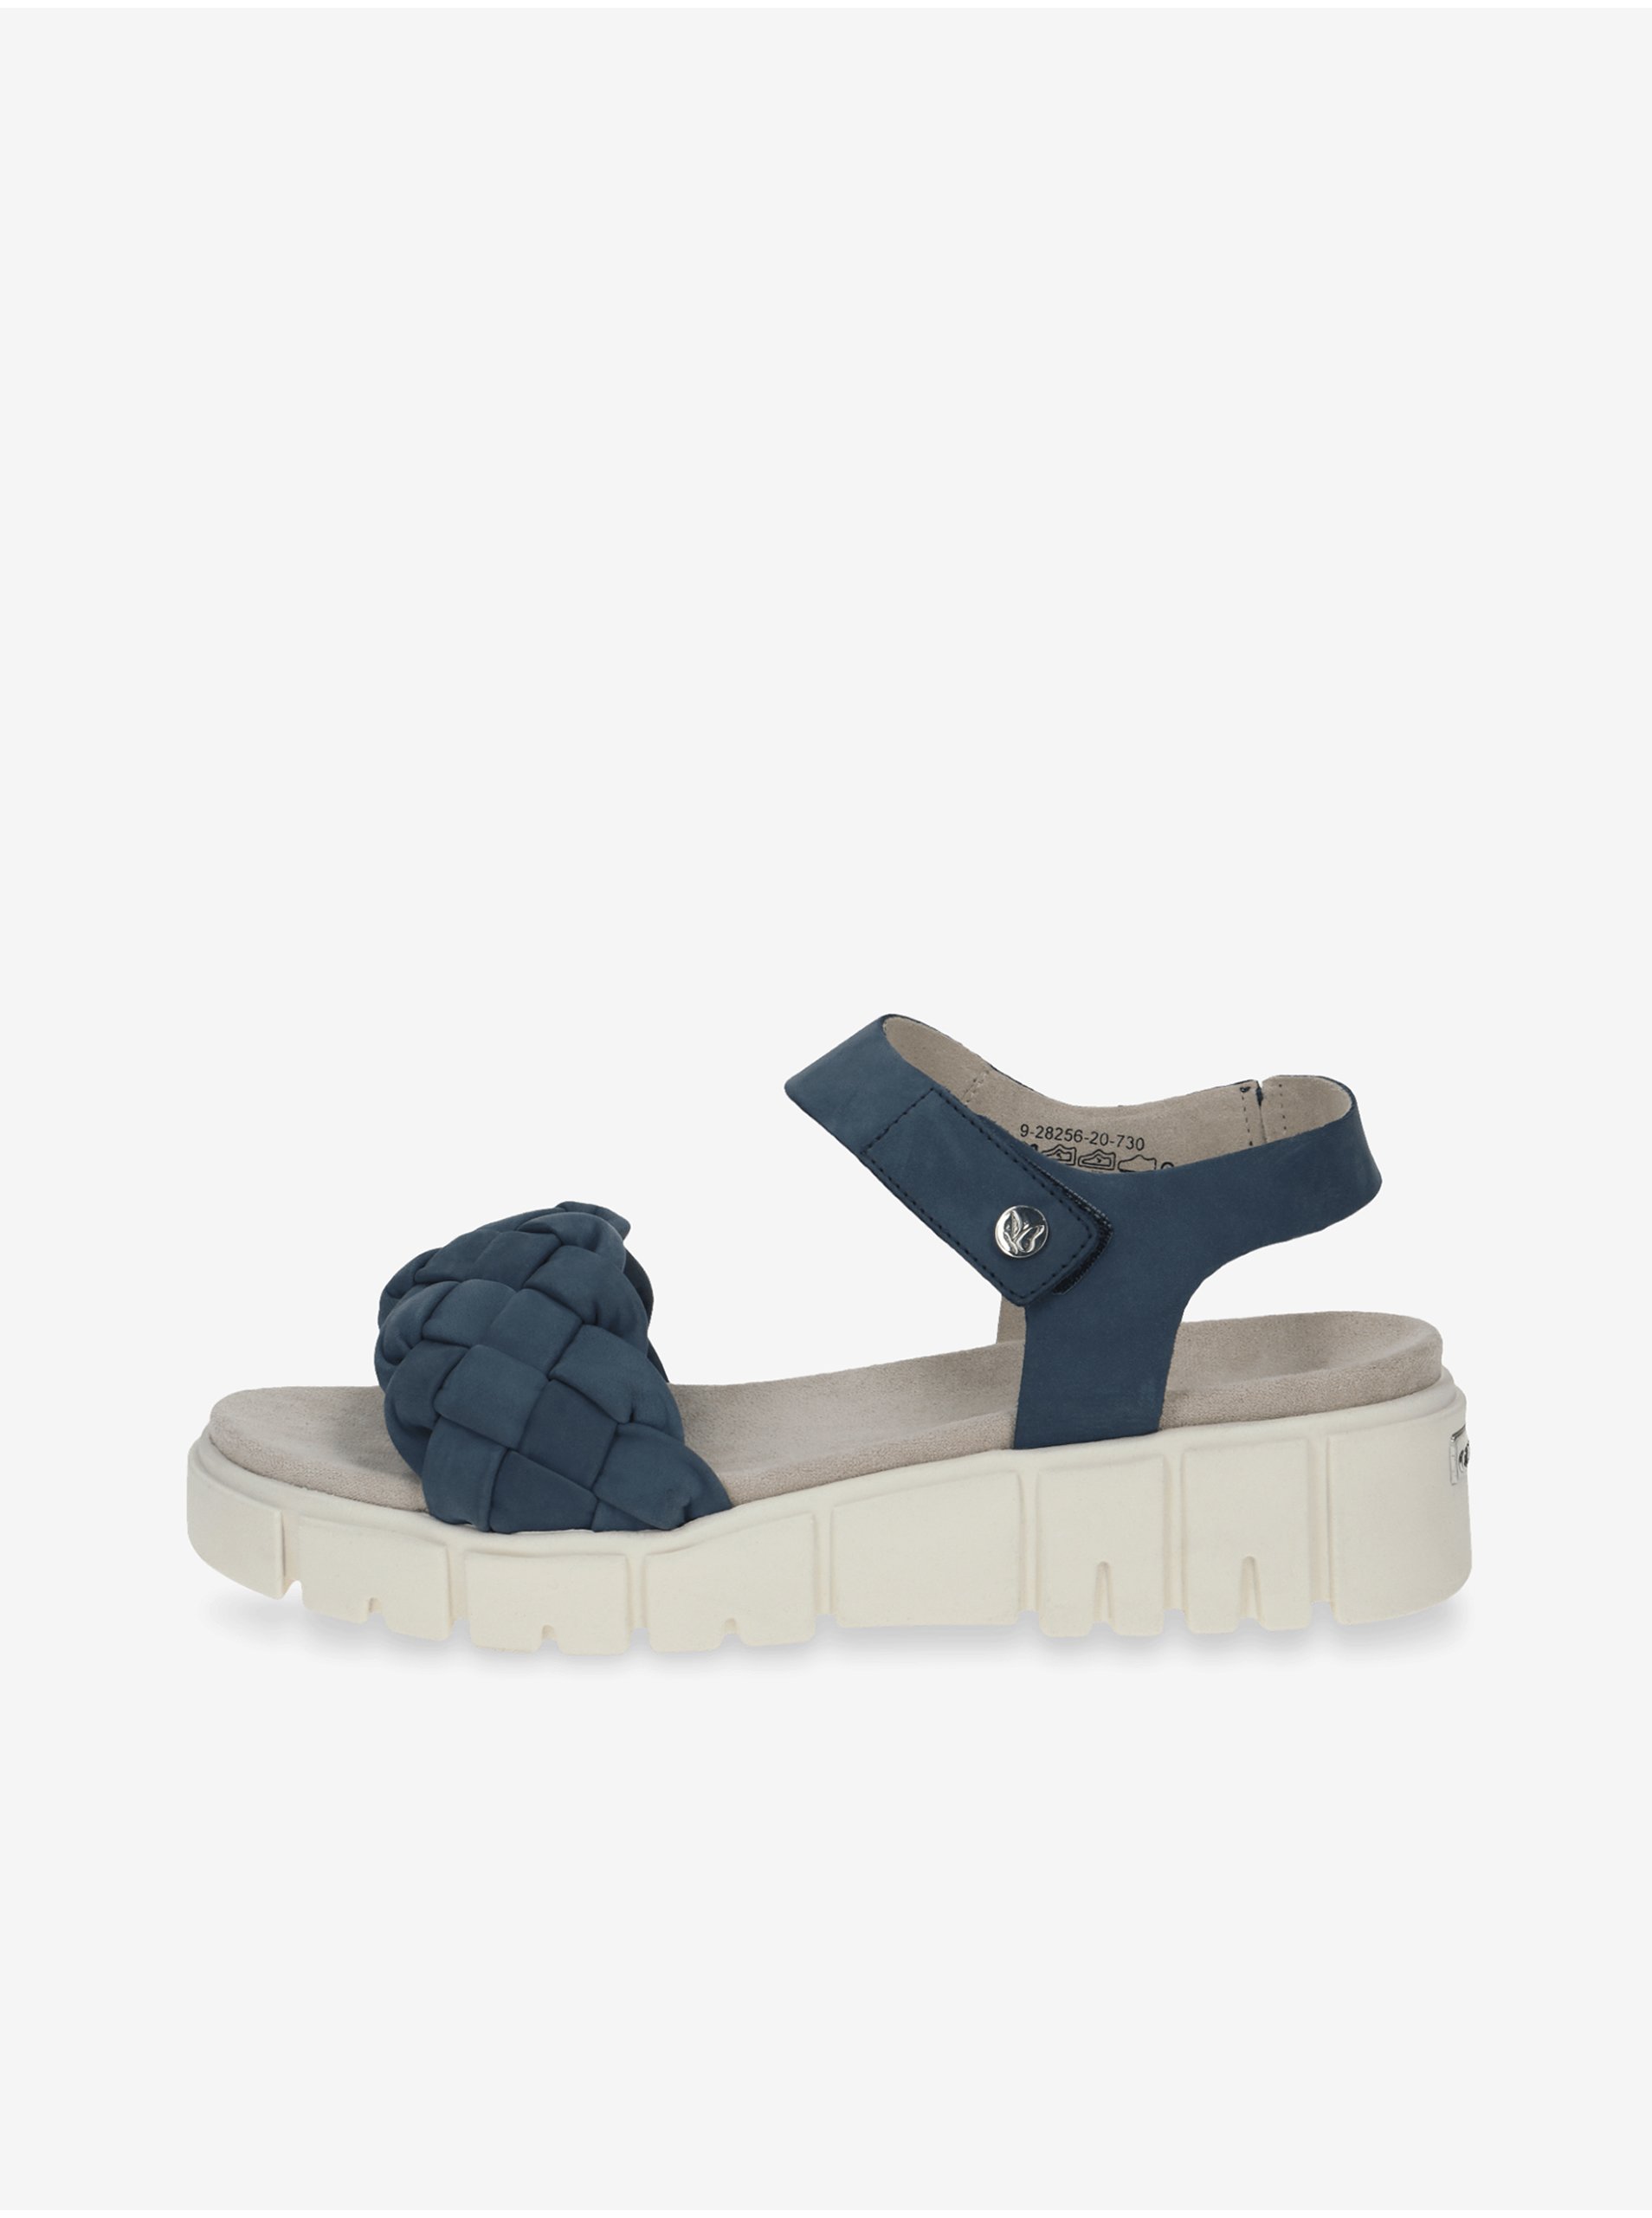 E-shop Tmavě modro-krémové dámské kožené sandály na platformě Caprice